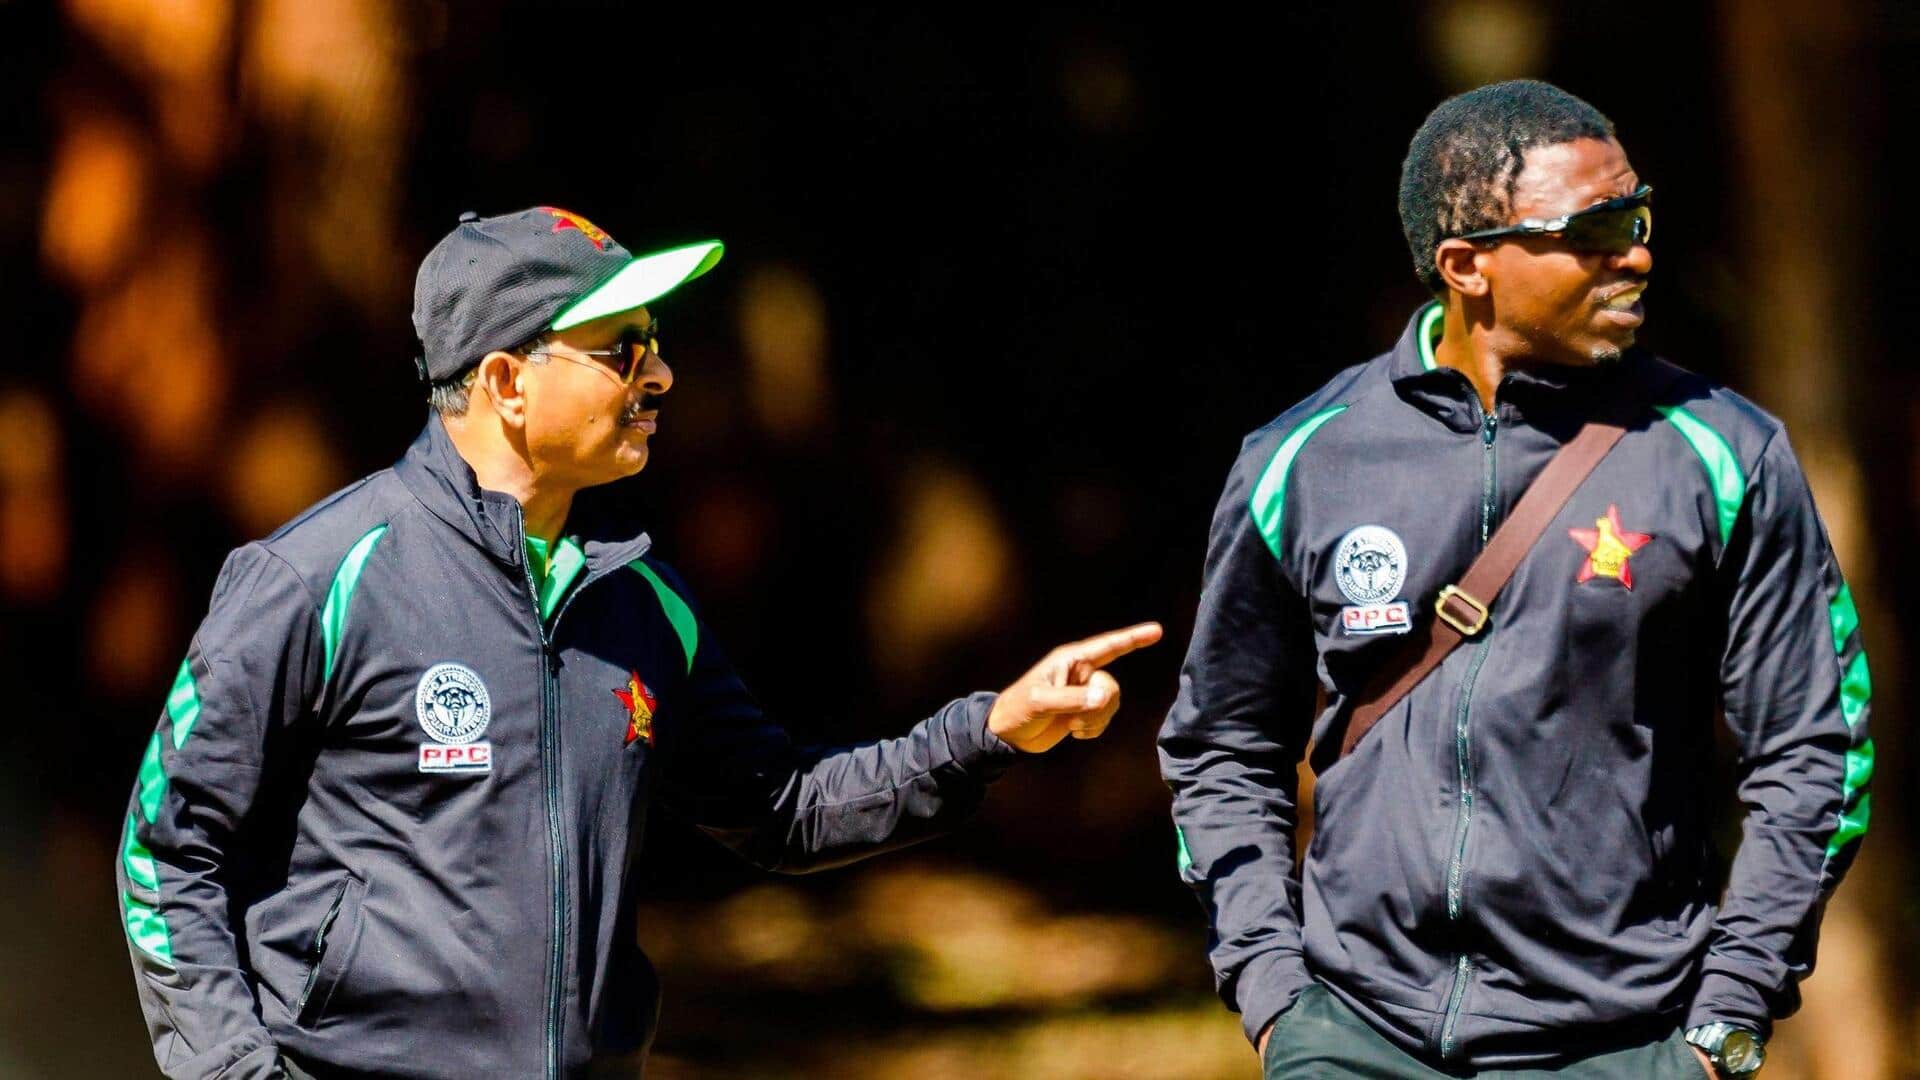 जिम्बाब्वे क्रिकेट ने की नए अंतरिम मुख्य कोच की घोषणा, श्रीलंका दौरे पर संभालेंगे जिम्मेदारी